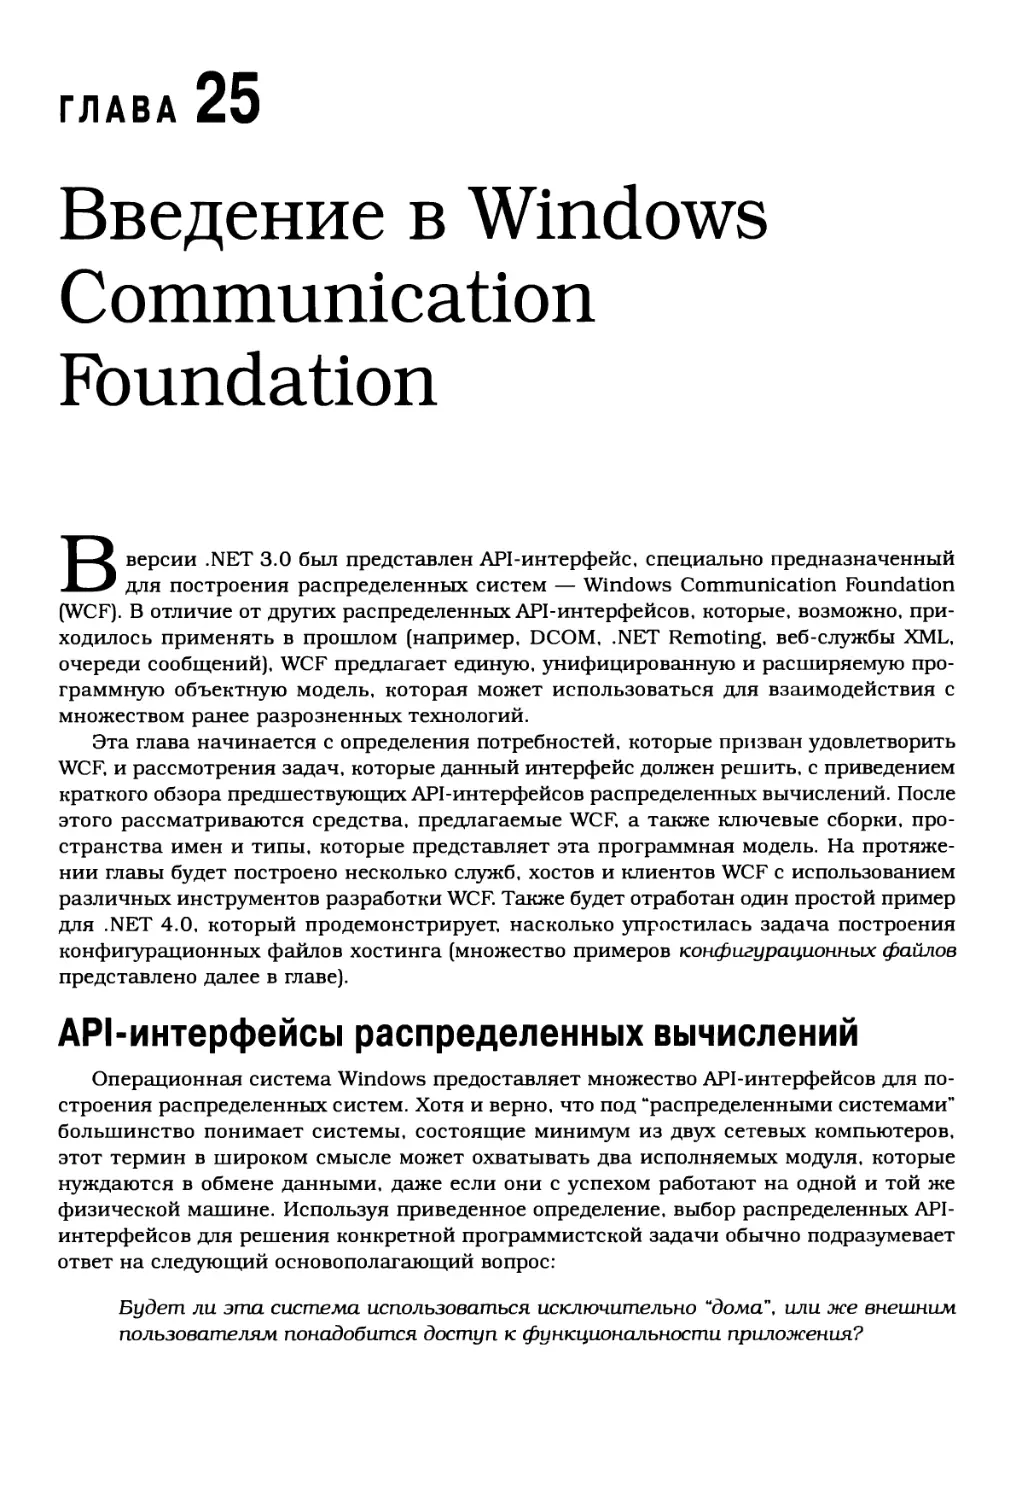 Глава 25. Введение в Windows Communication Foundation